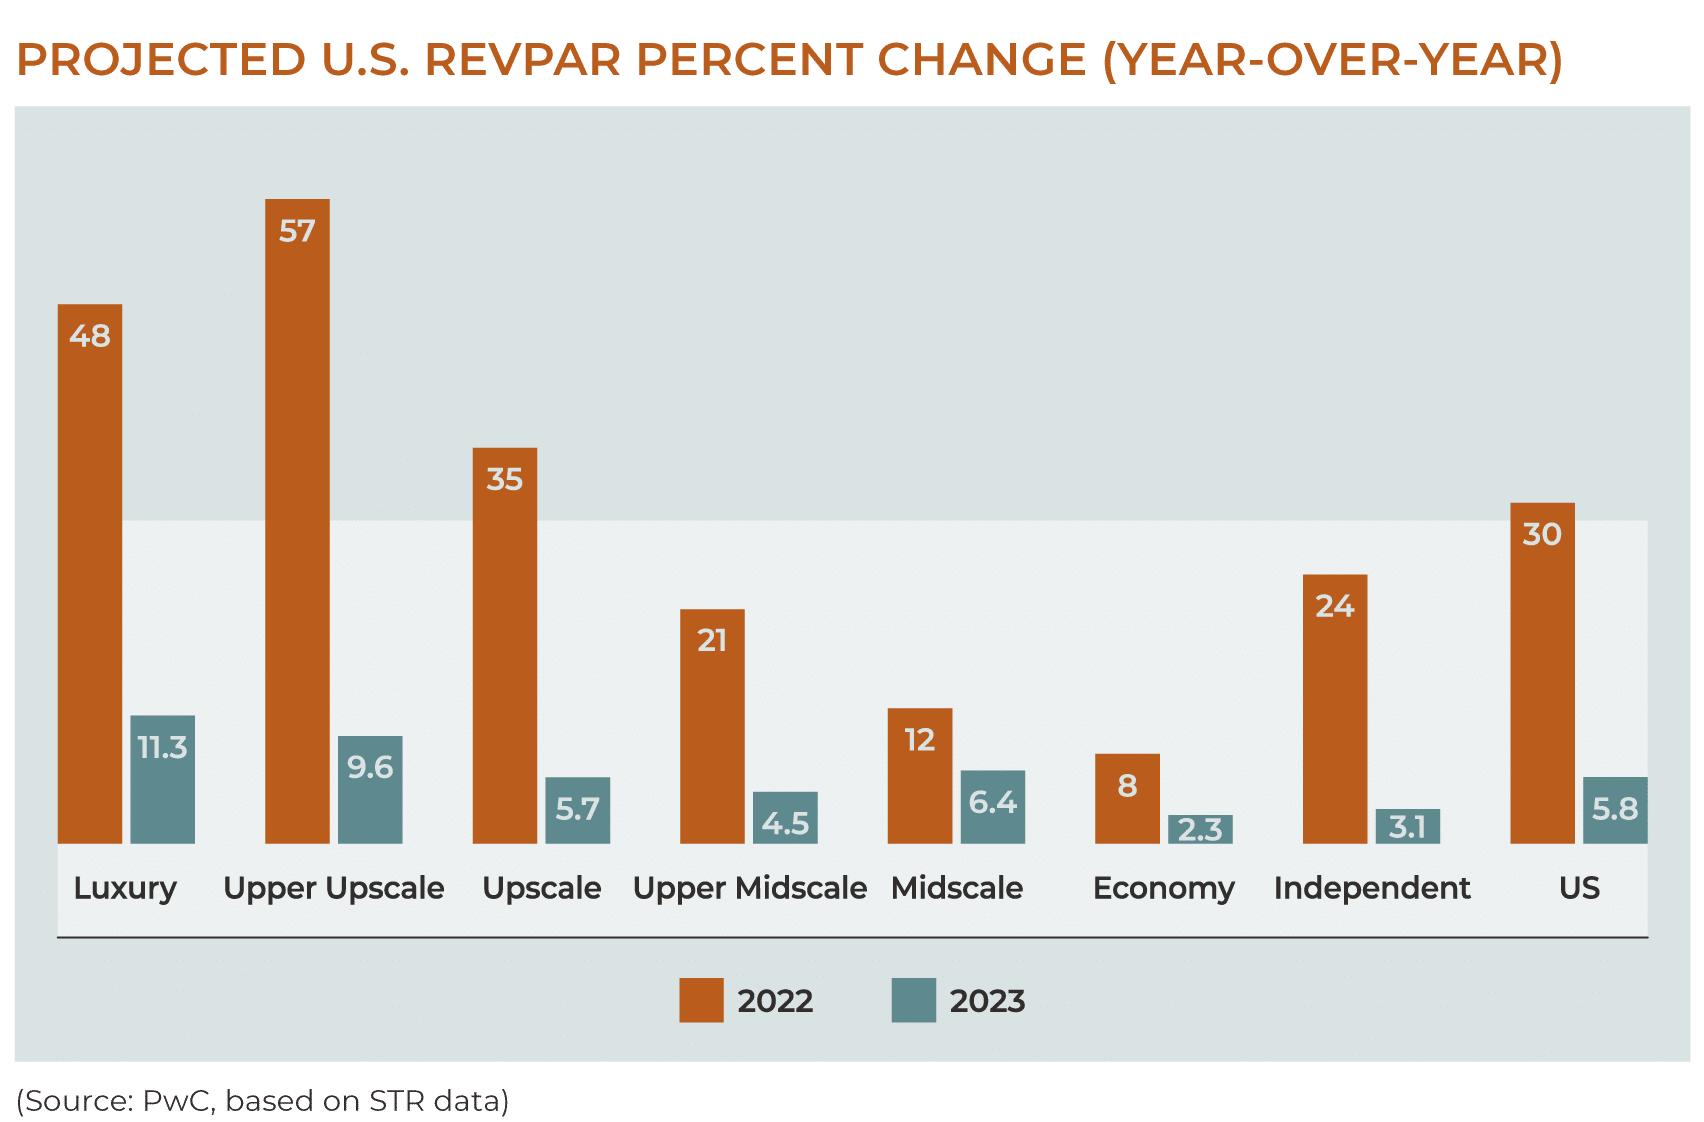 projected RevPAR change for 2023